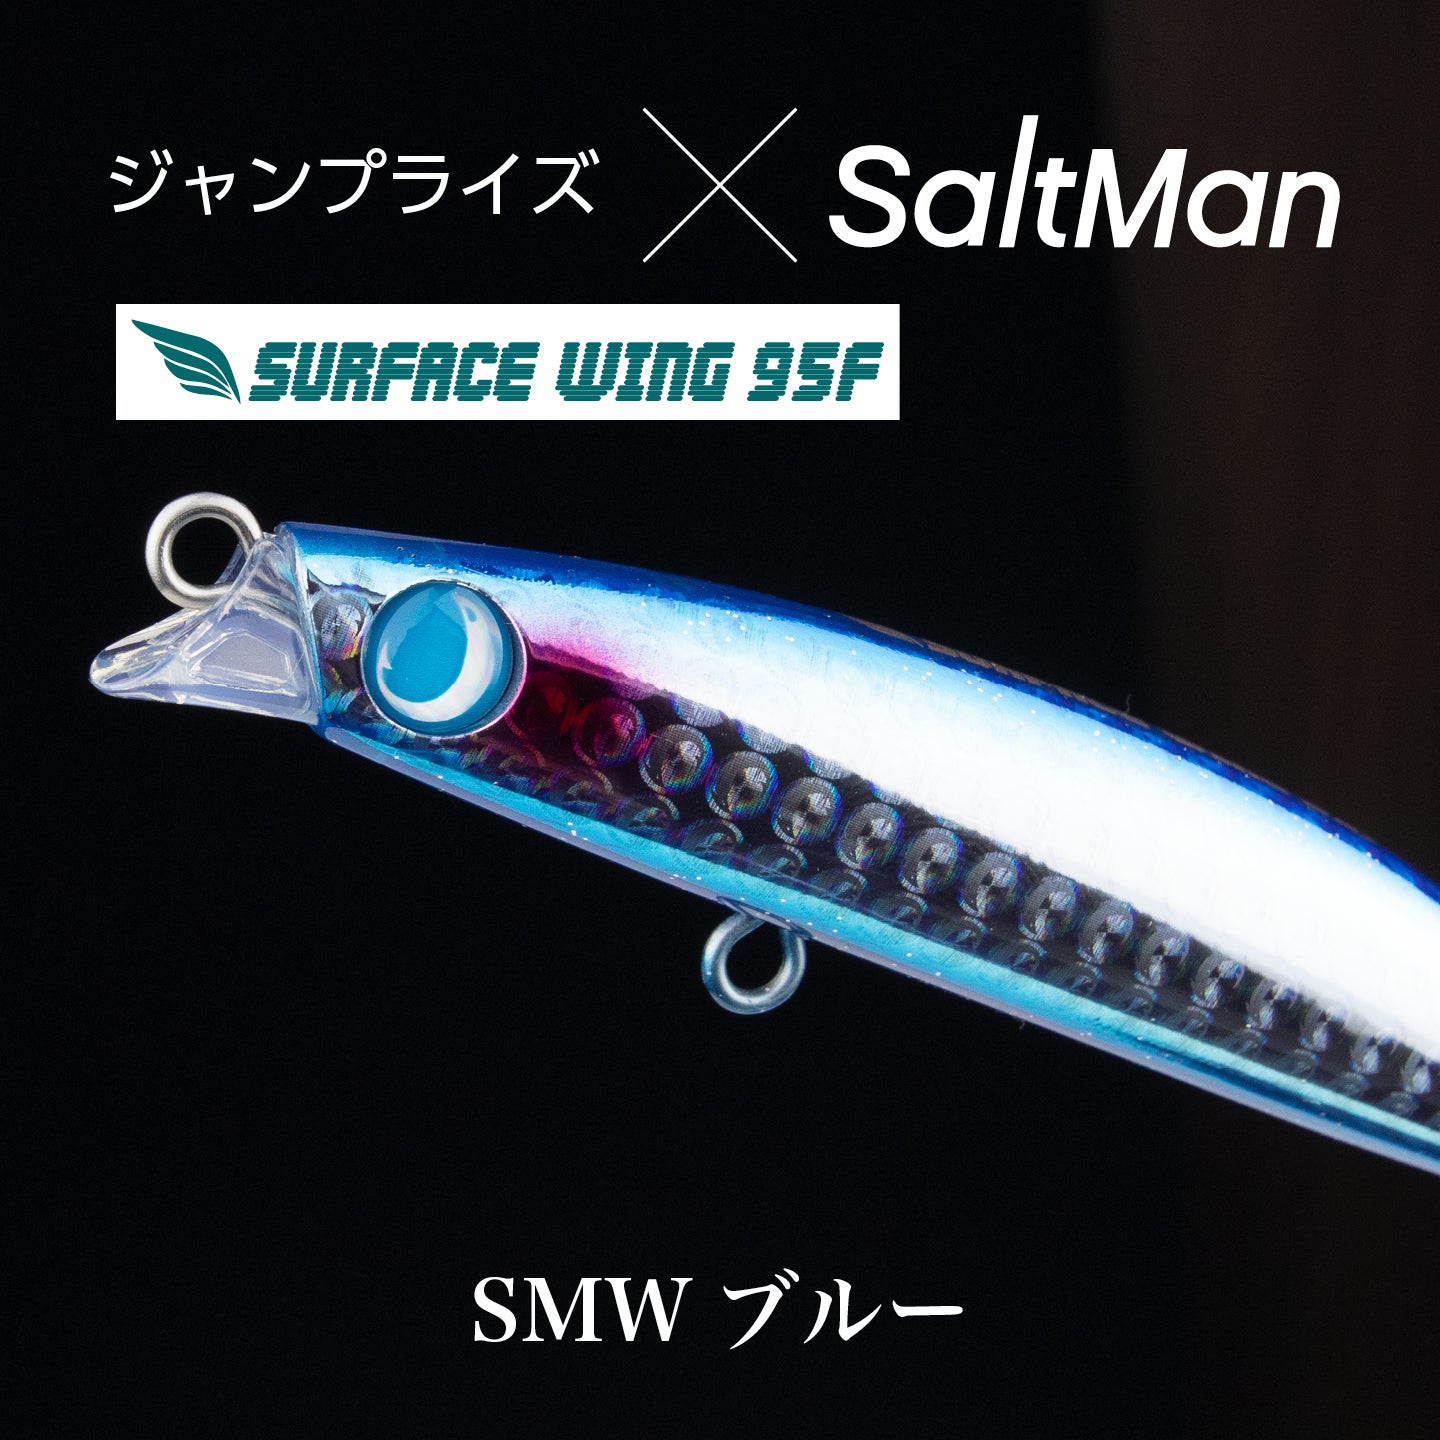 ジャンプライズのサーフェスウイング95Fオリカラ | SaltManWebShop